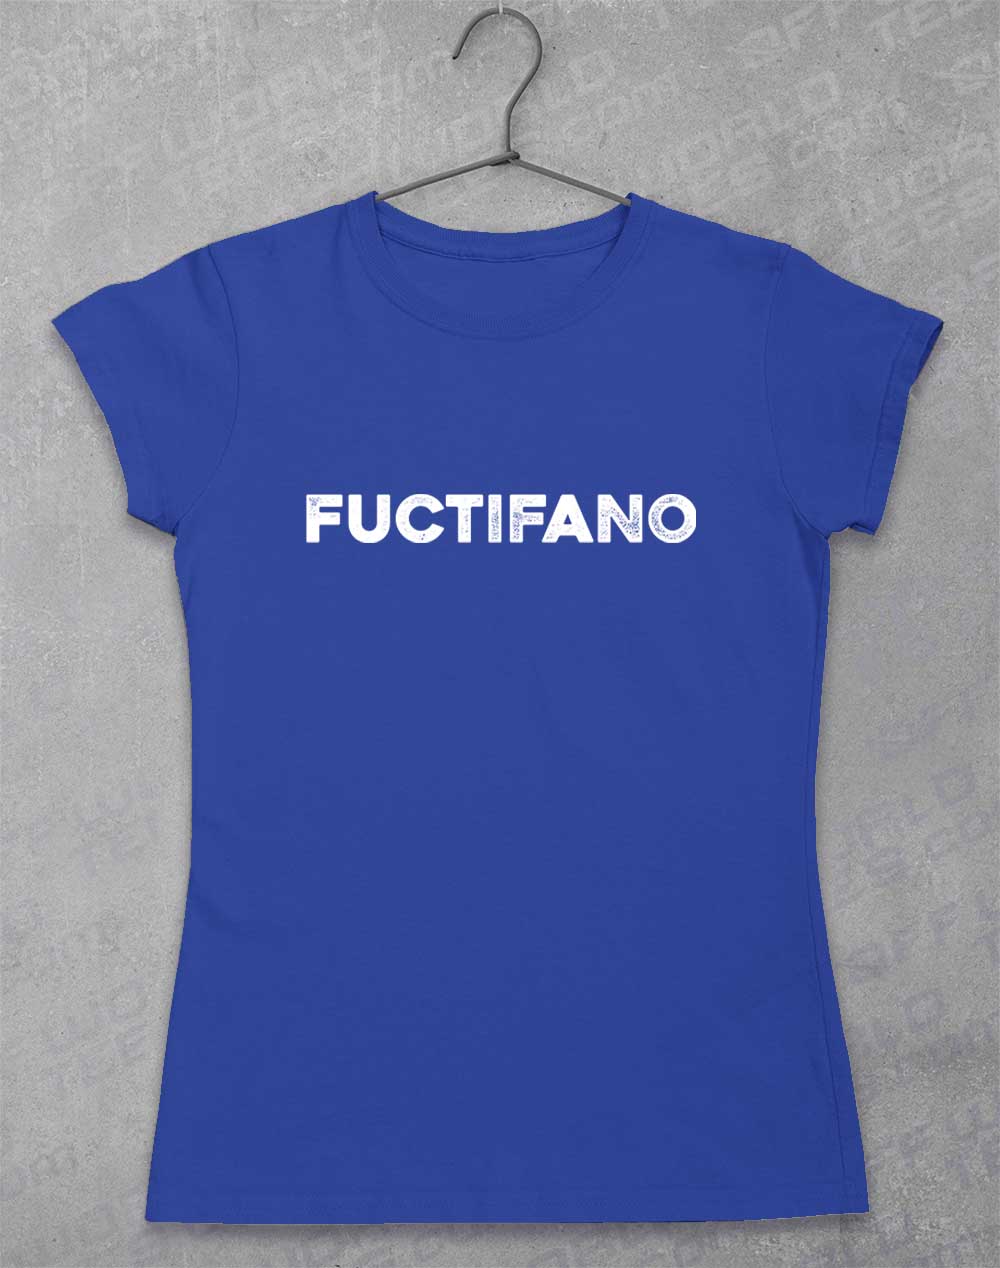 Royal - Fuctifano Women's T-Shirt